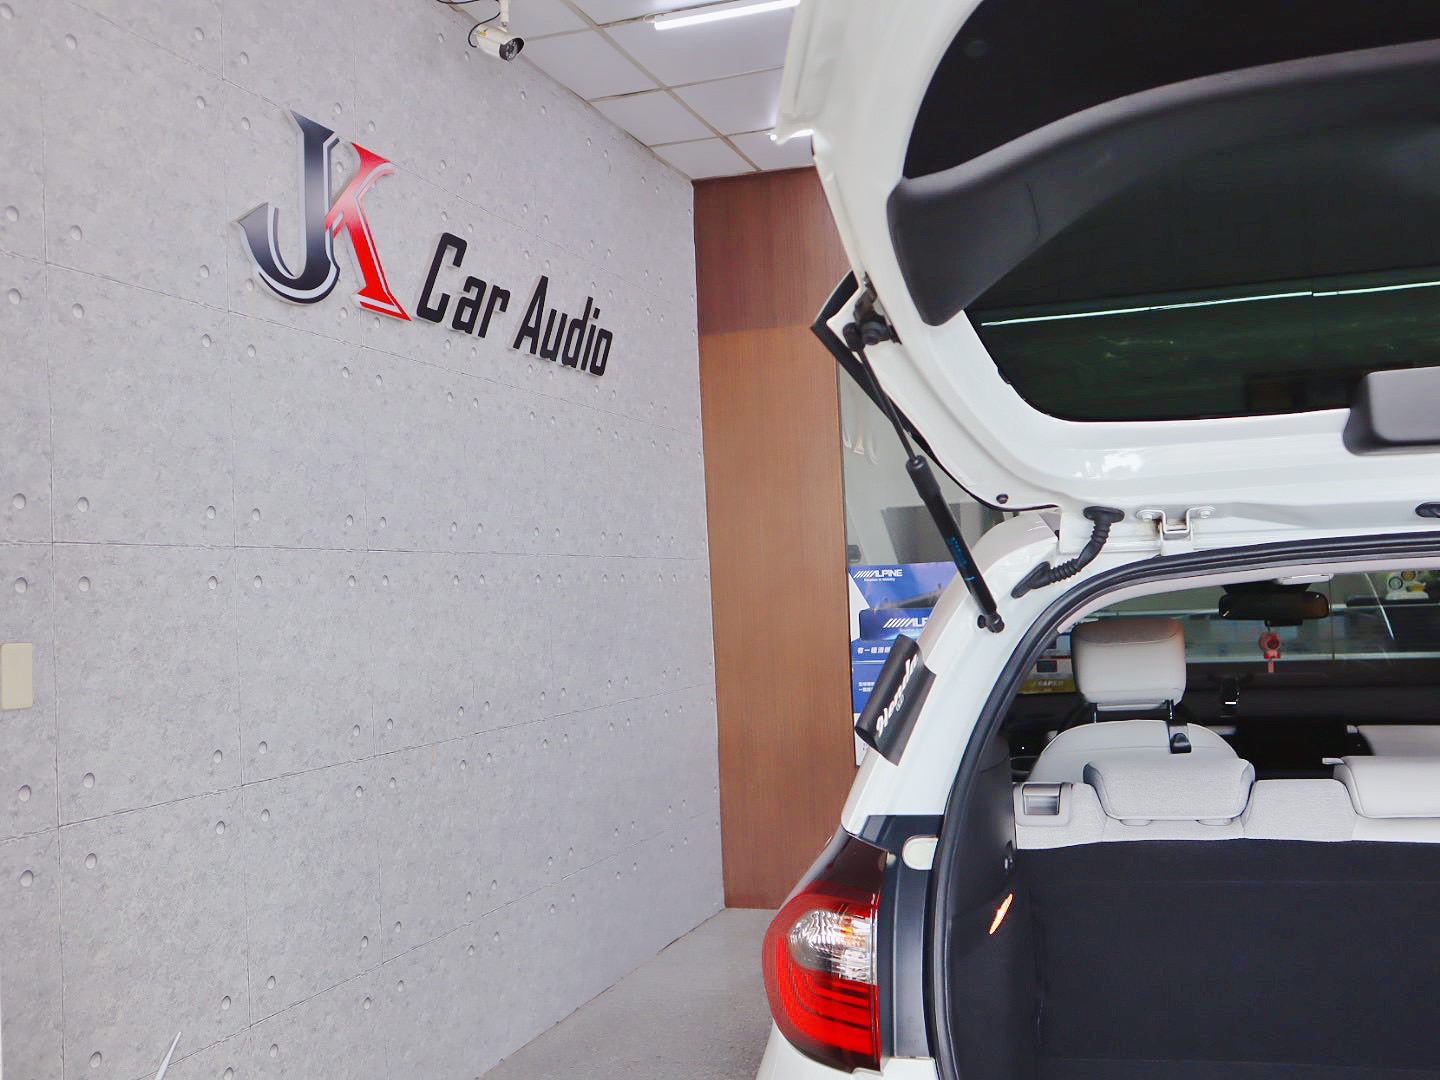 JK杰克汽車音響 彰化專業改裝提供多樣化高品質服務 客製化改裝規劃 制震隔音 音質升級規劃